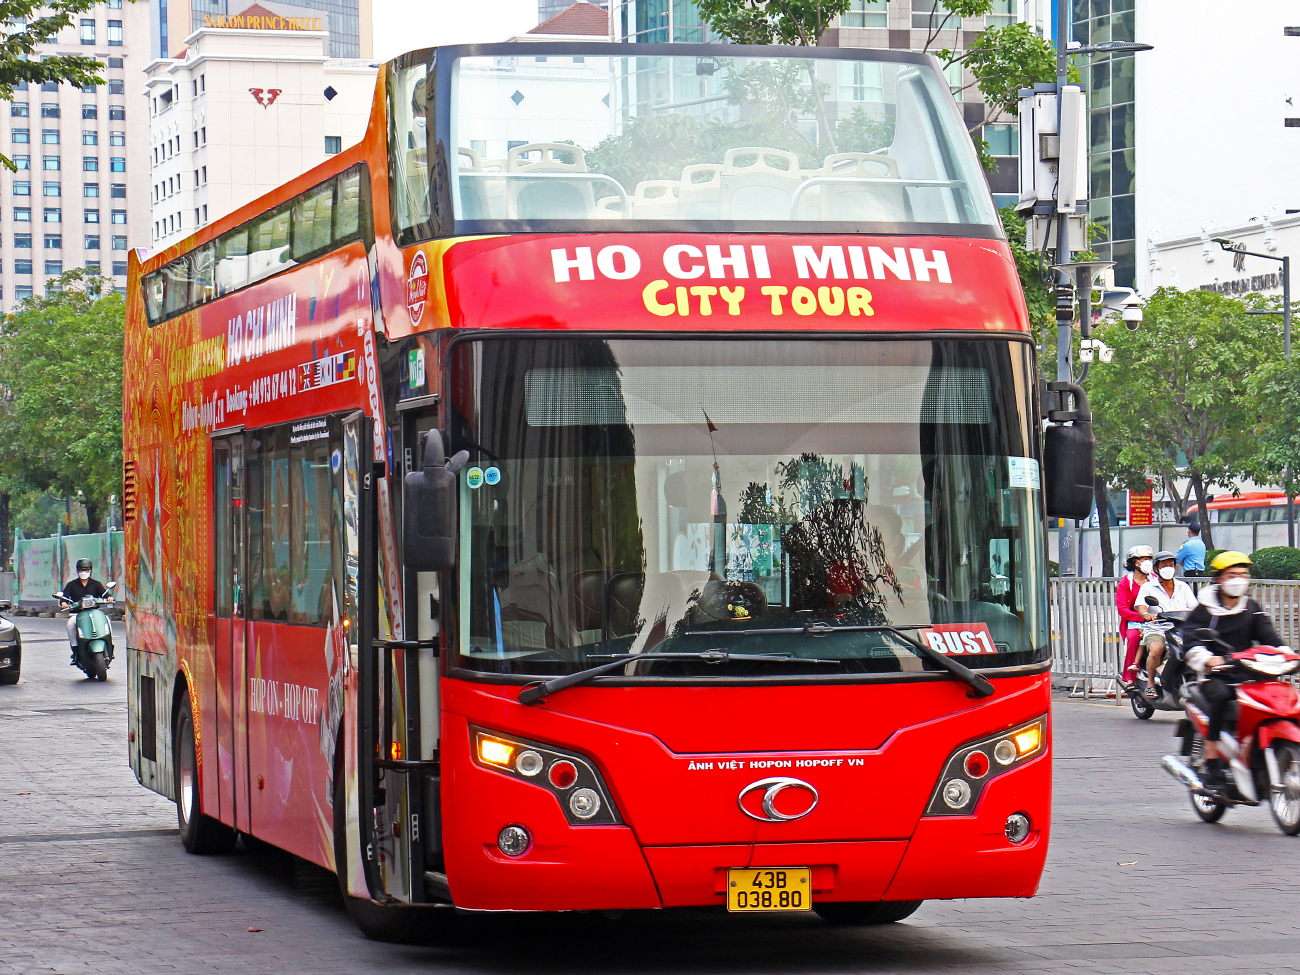 Ho Chi Minh City, Thaco TB120SS č. 43B-038.80